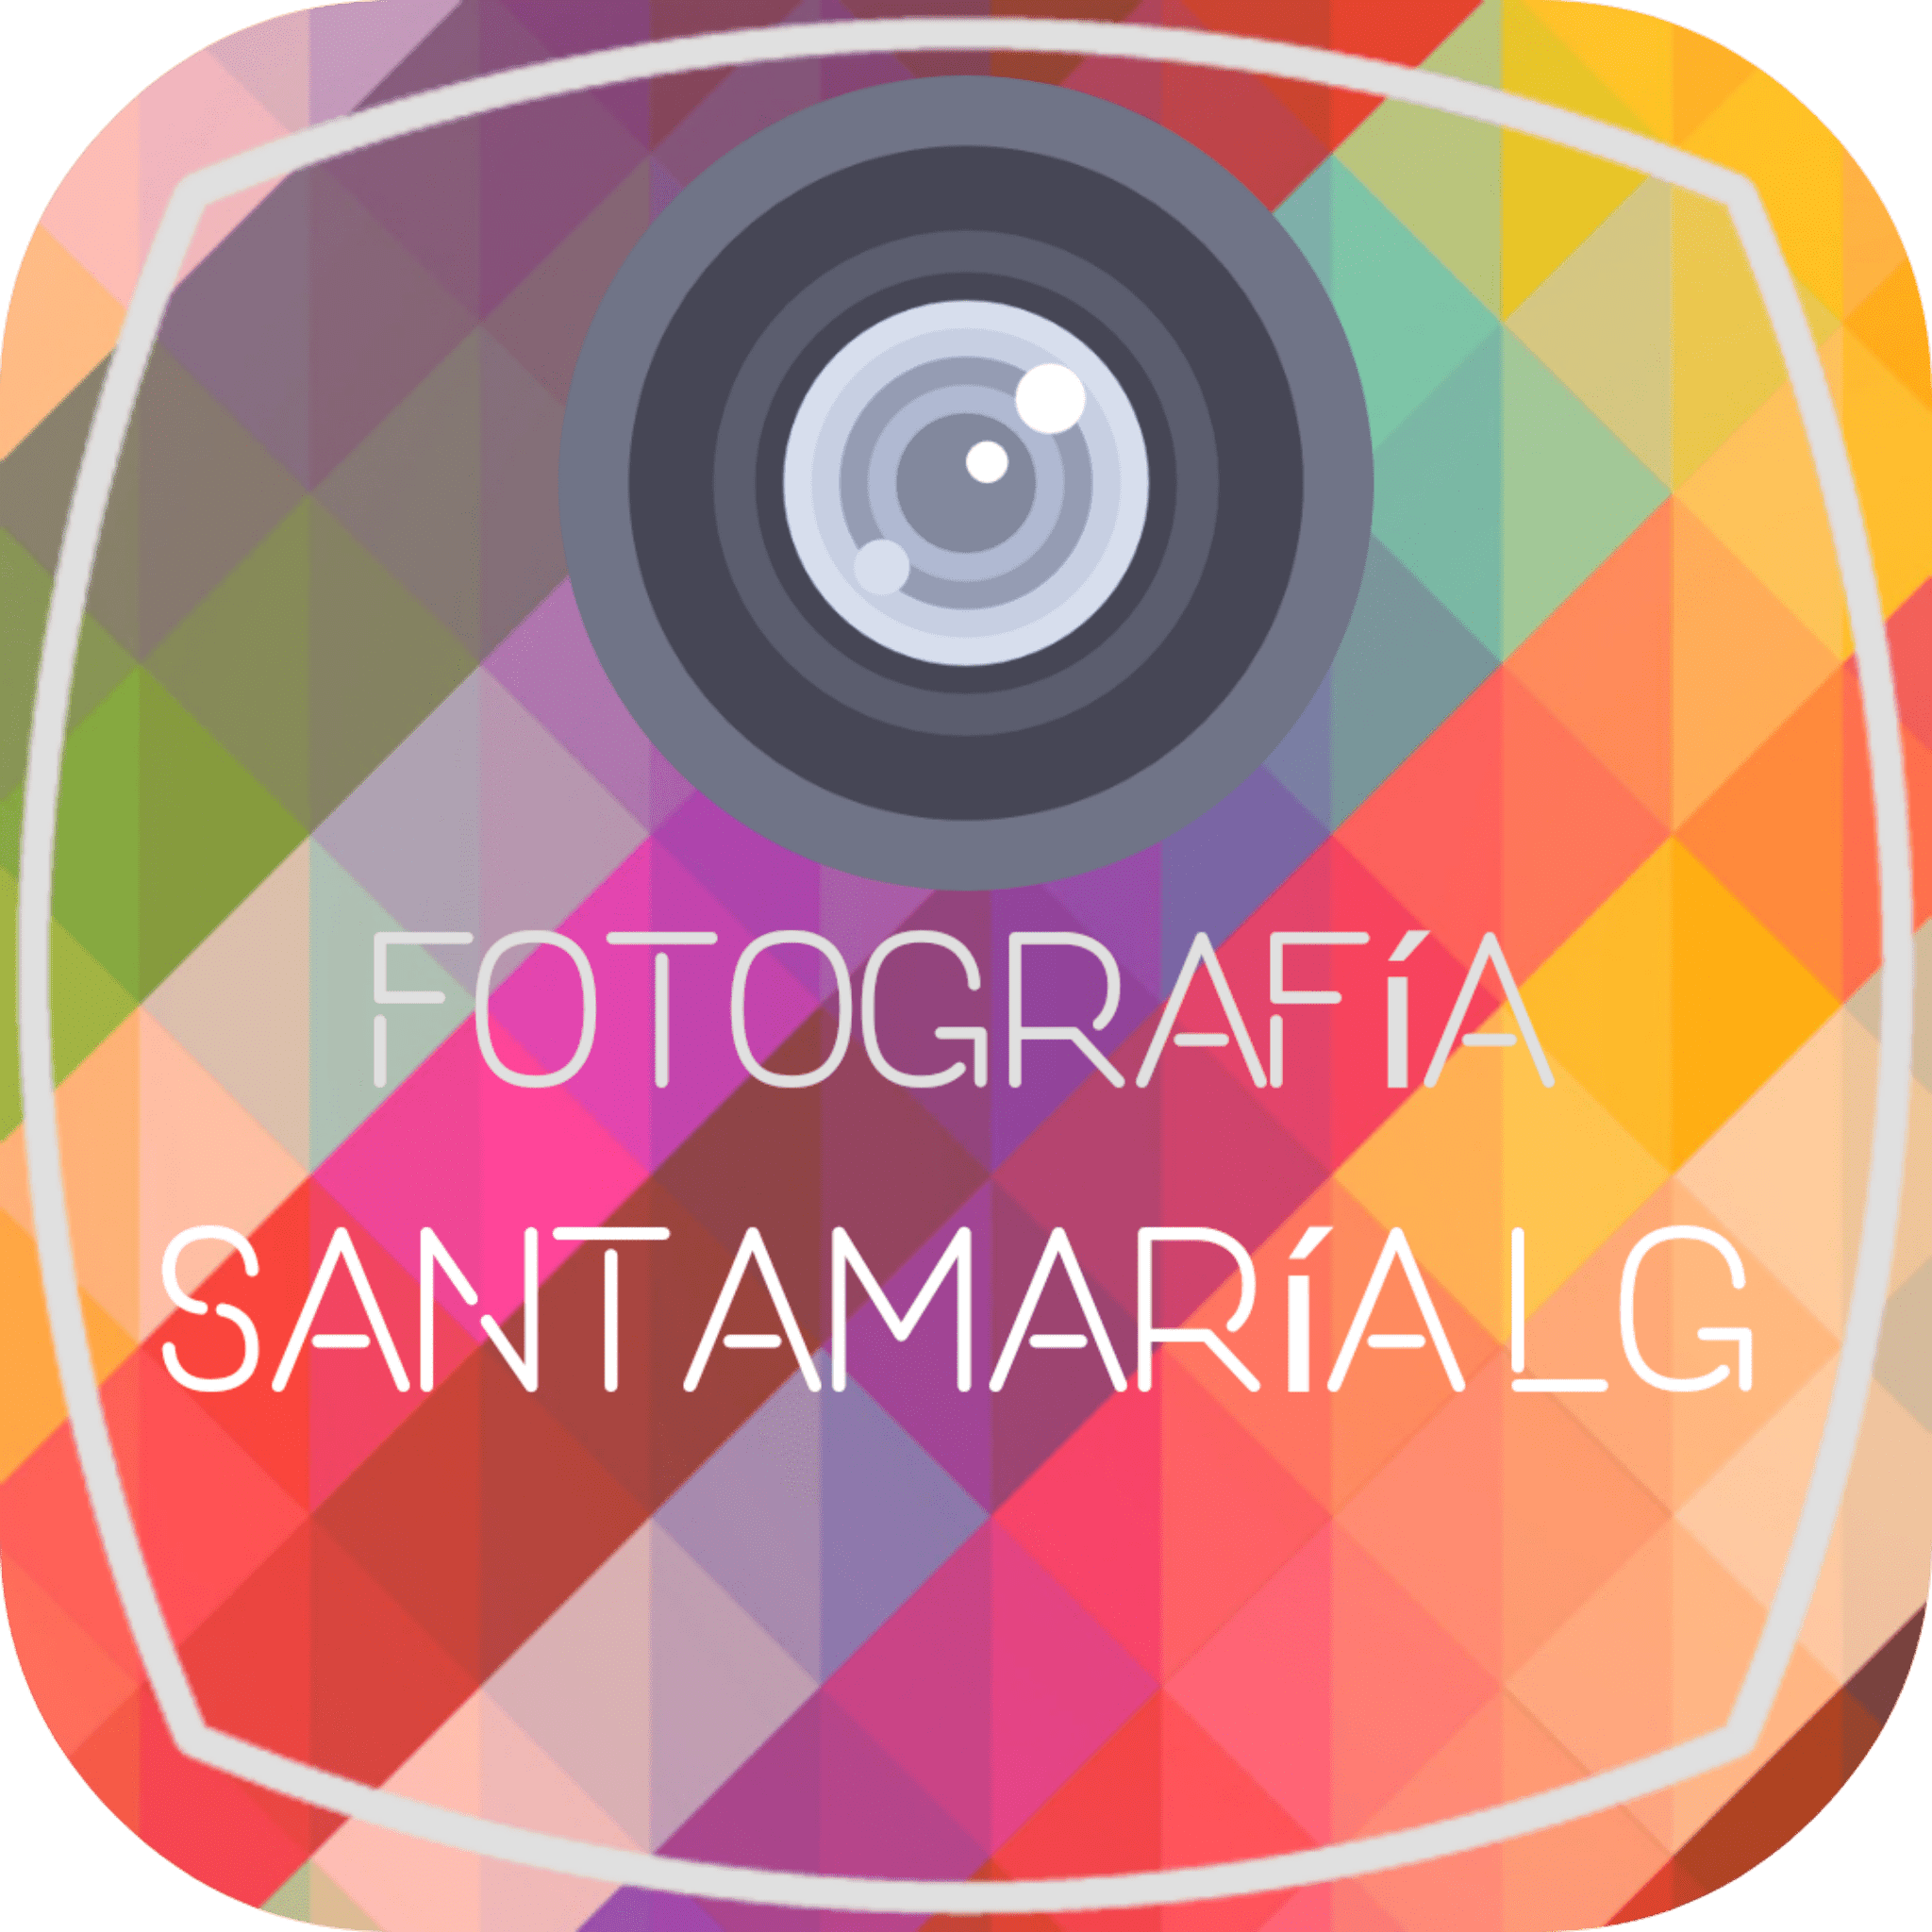 Fotografía Santamaría Lg